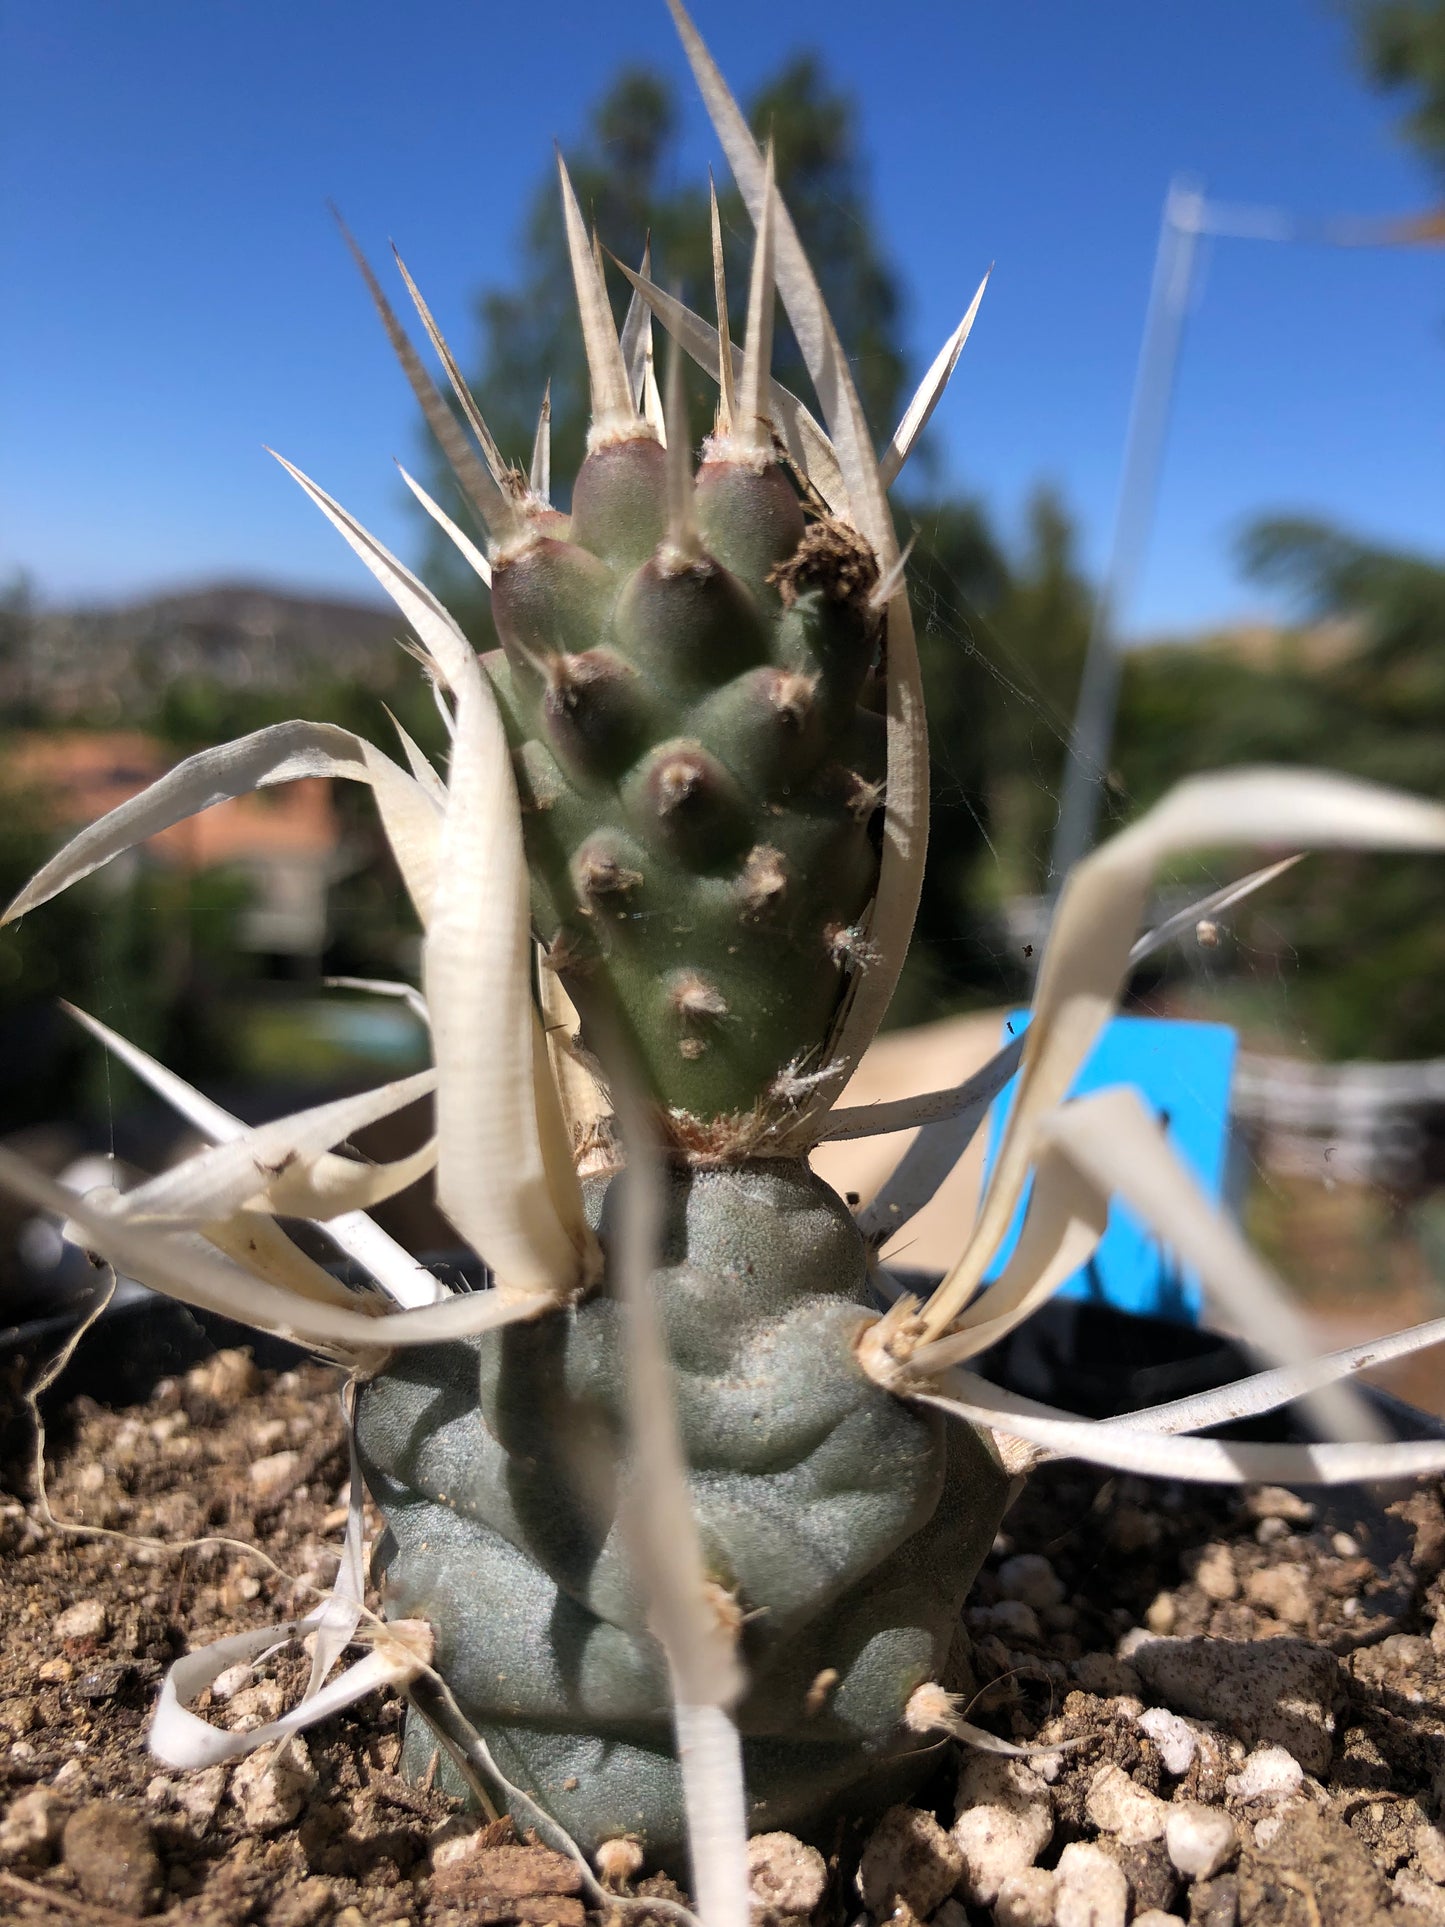 Tephrocactus articulatus papyracanthus Paper Cactus 2"T #2B